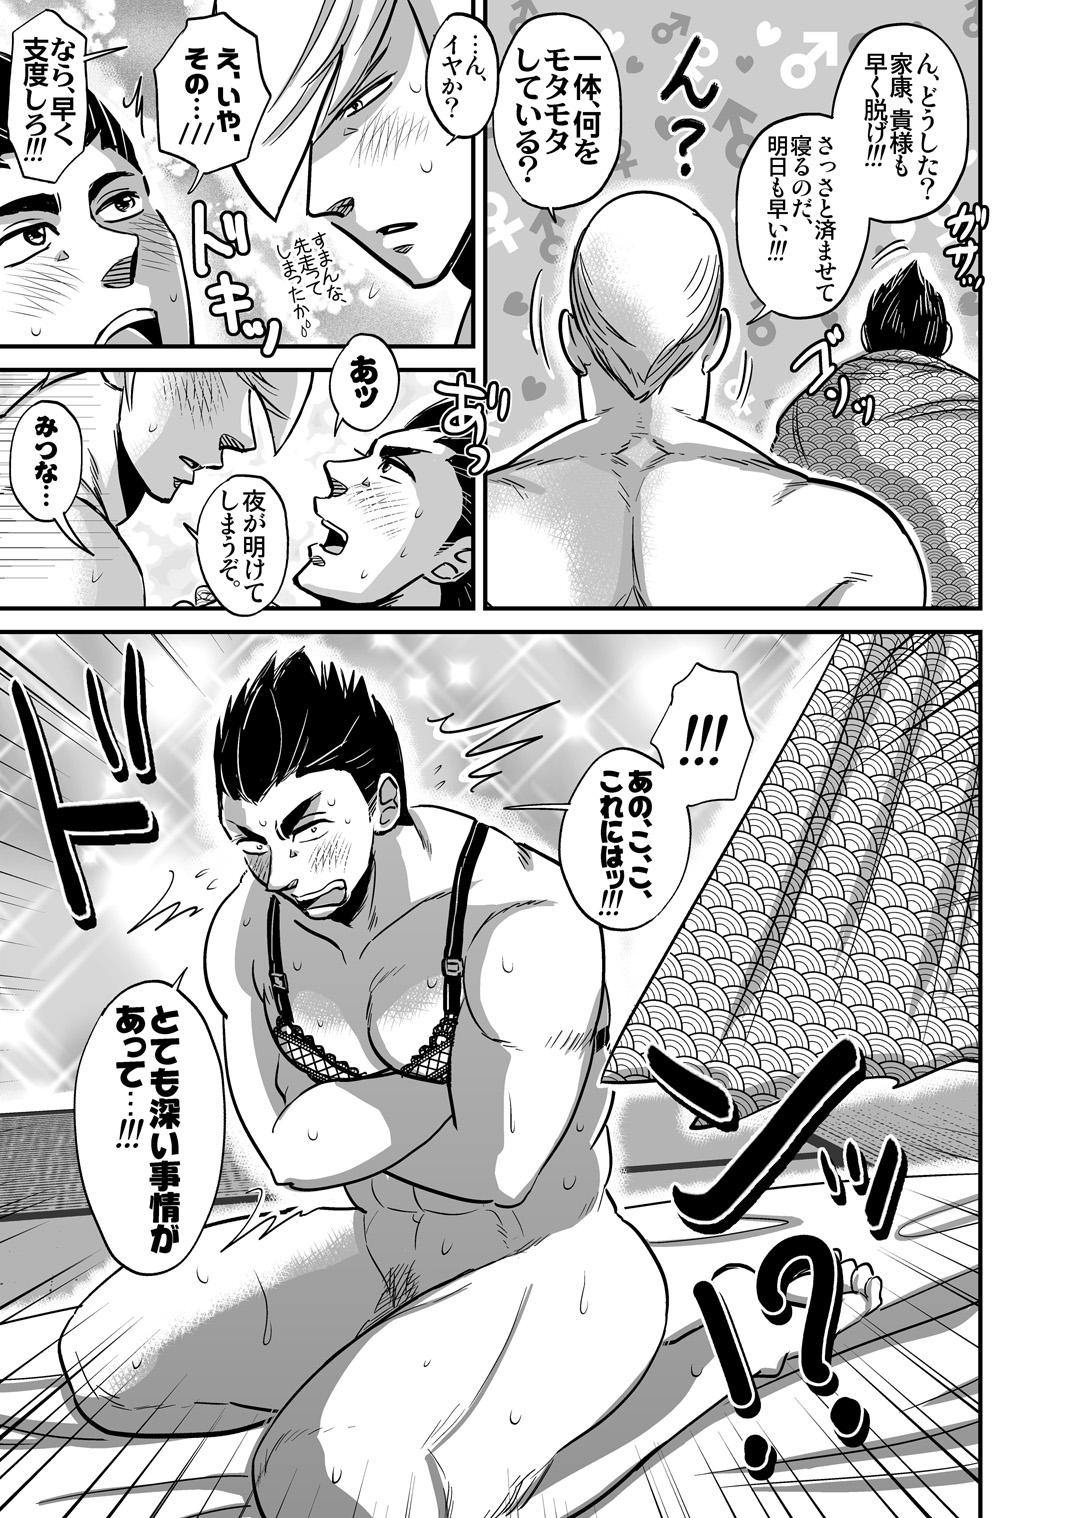 Fucks Multi-HOMO manga at home - Sengoku basara Grandmother - Page 6